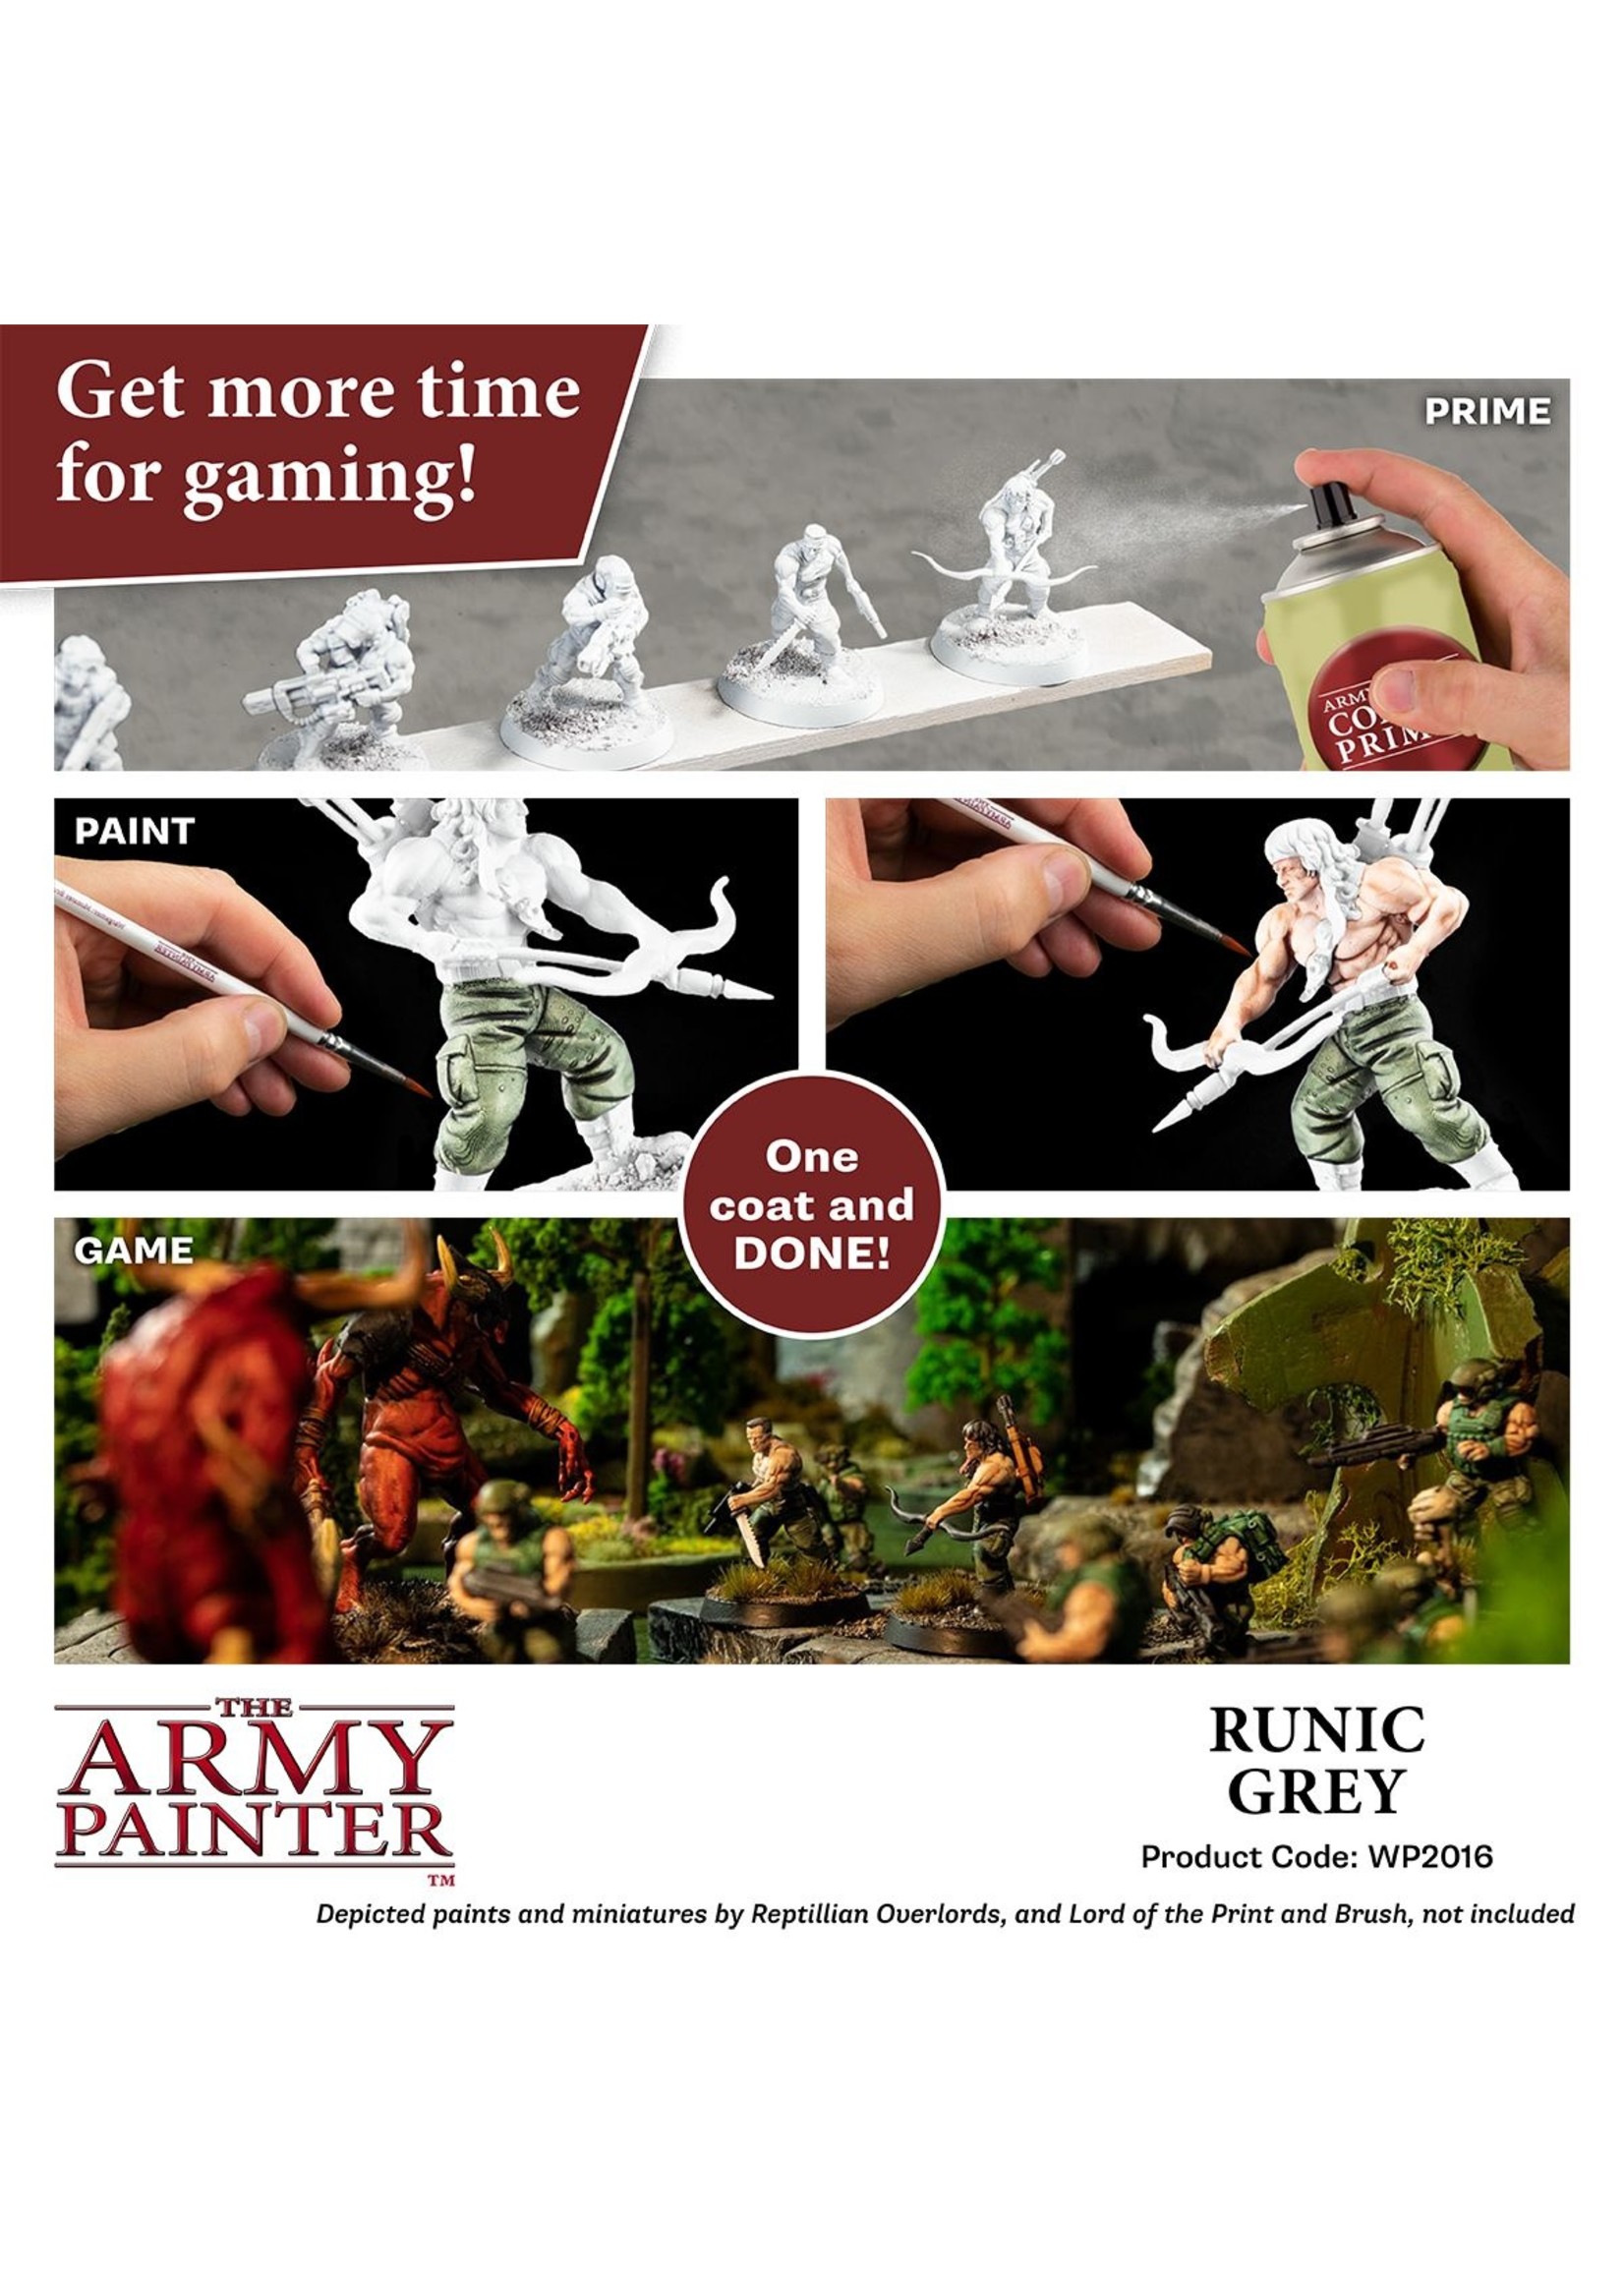 The Army Painter WP2016 - Speedpaint: Runic Grey